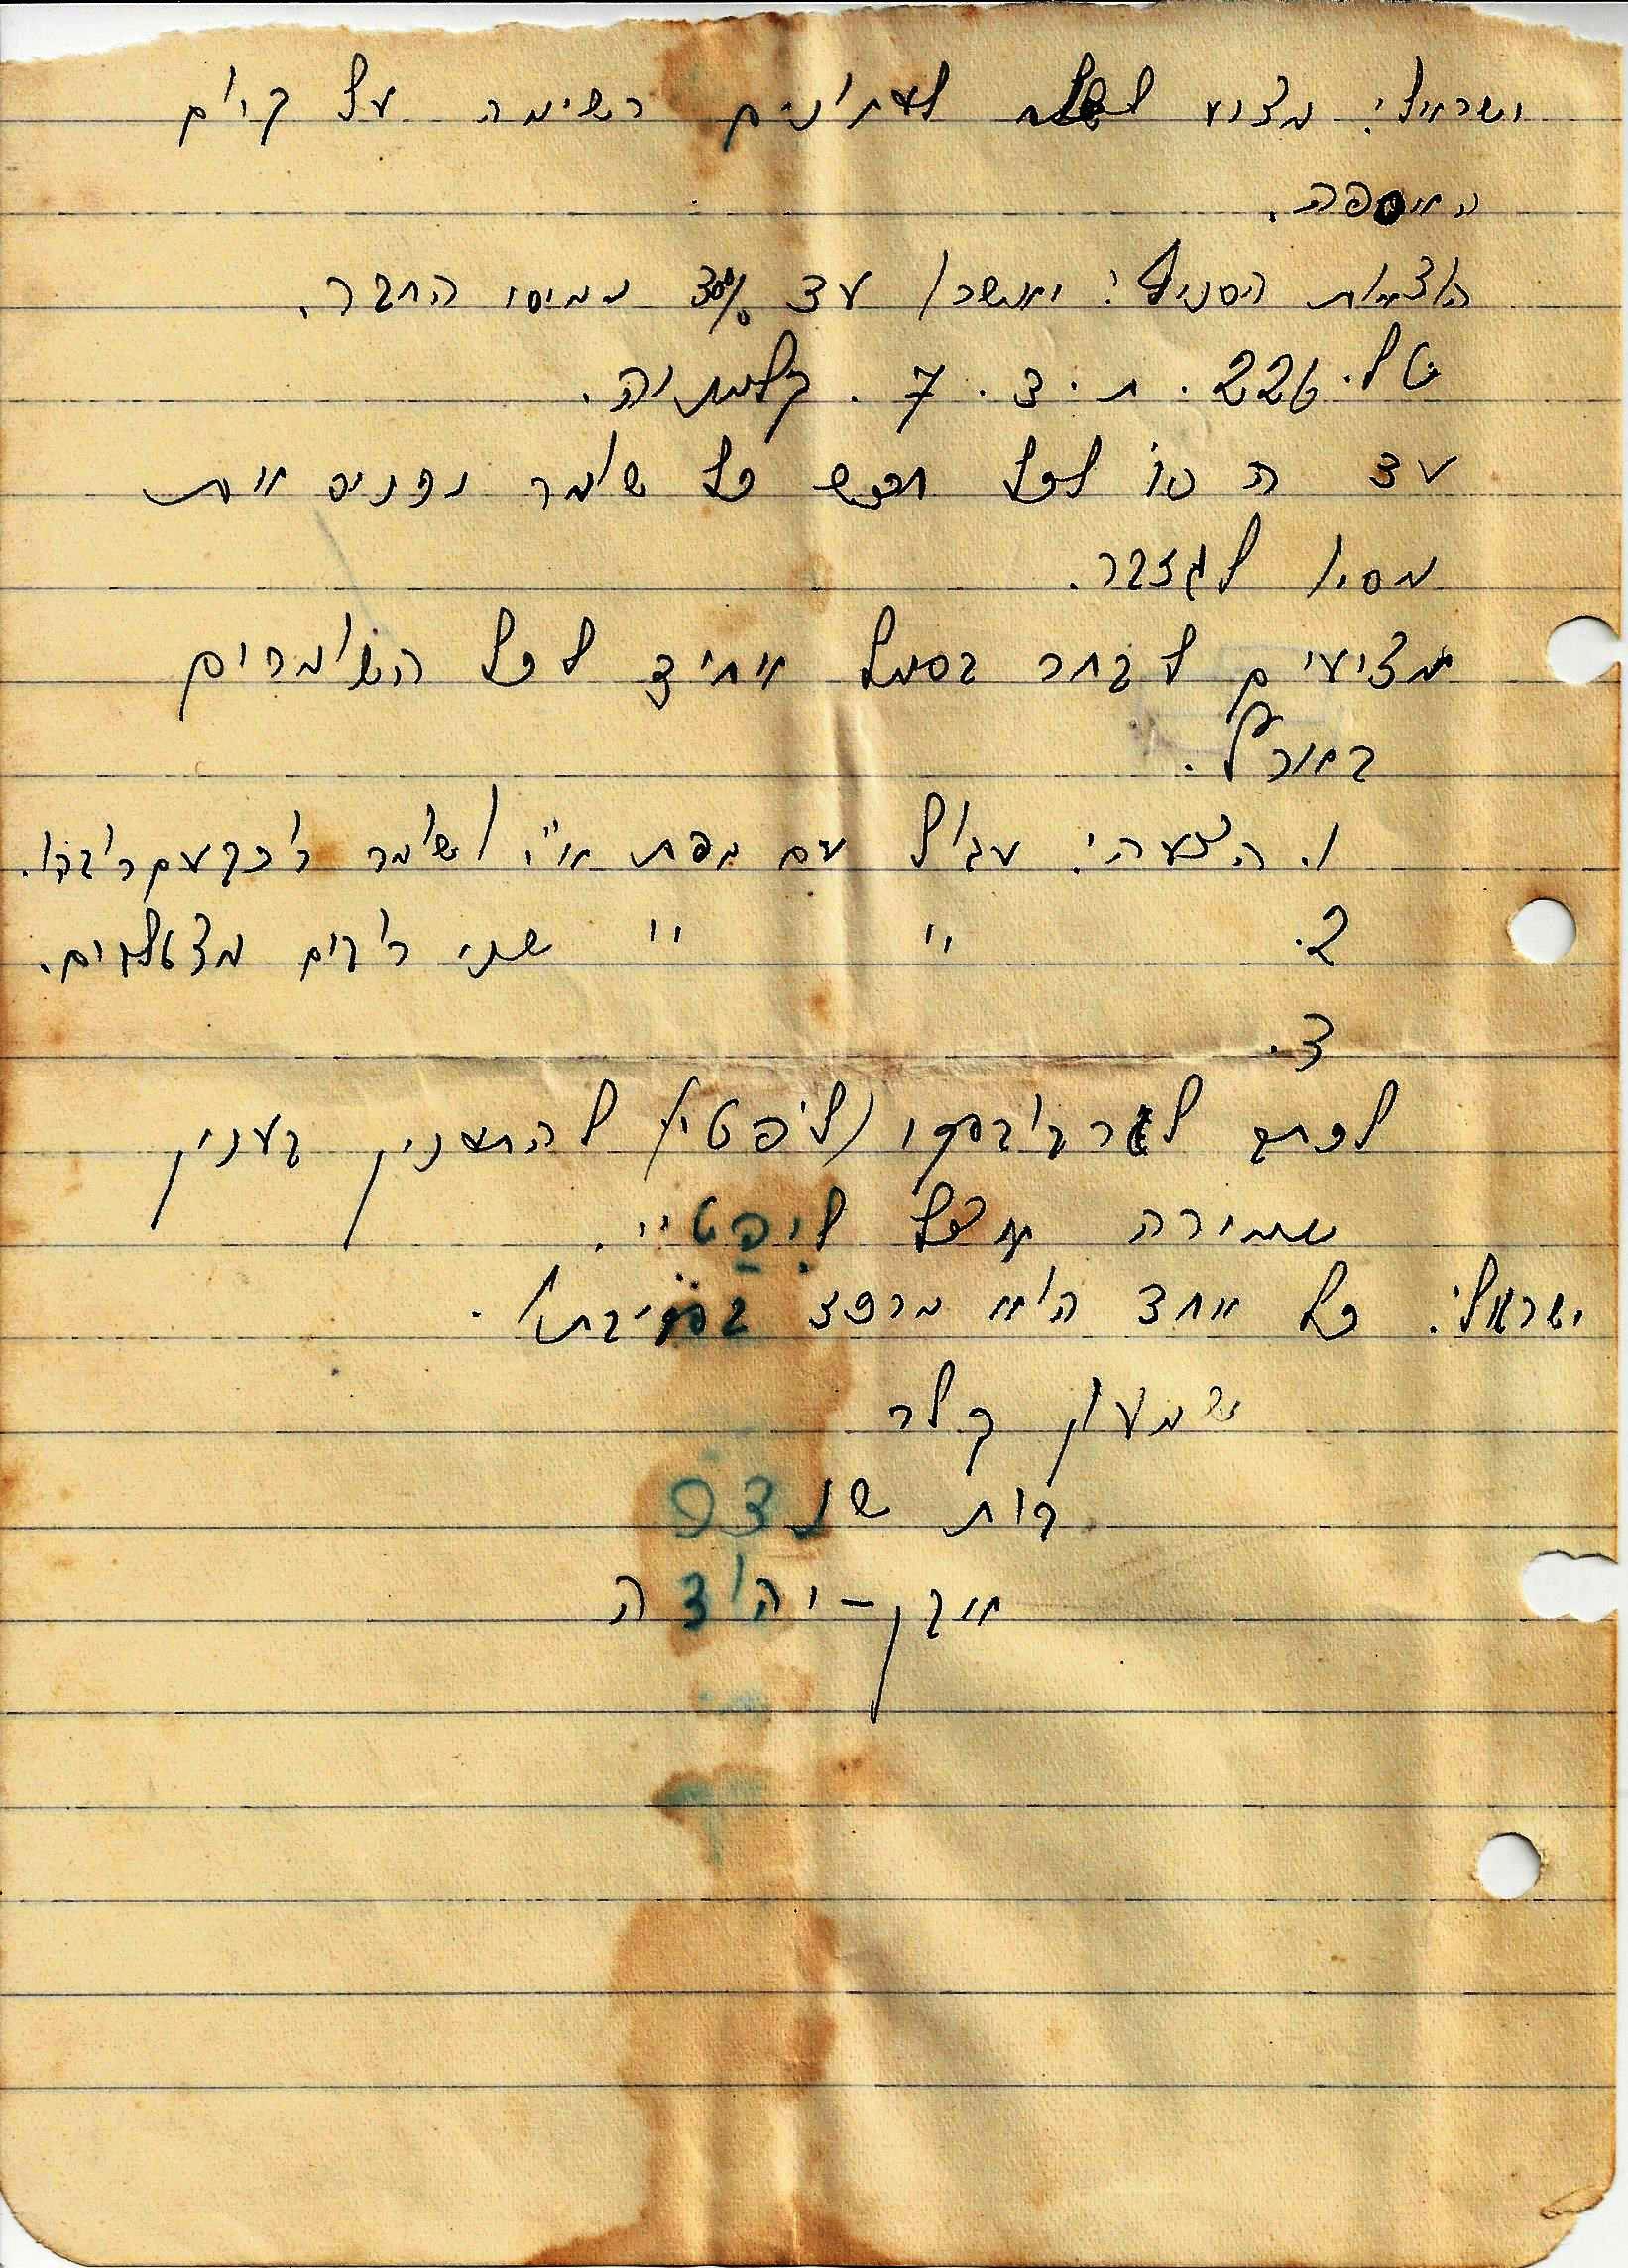  אספת שומרים , קלמניה, 13.4.1937